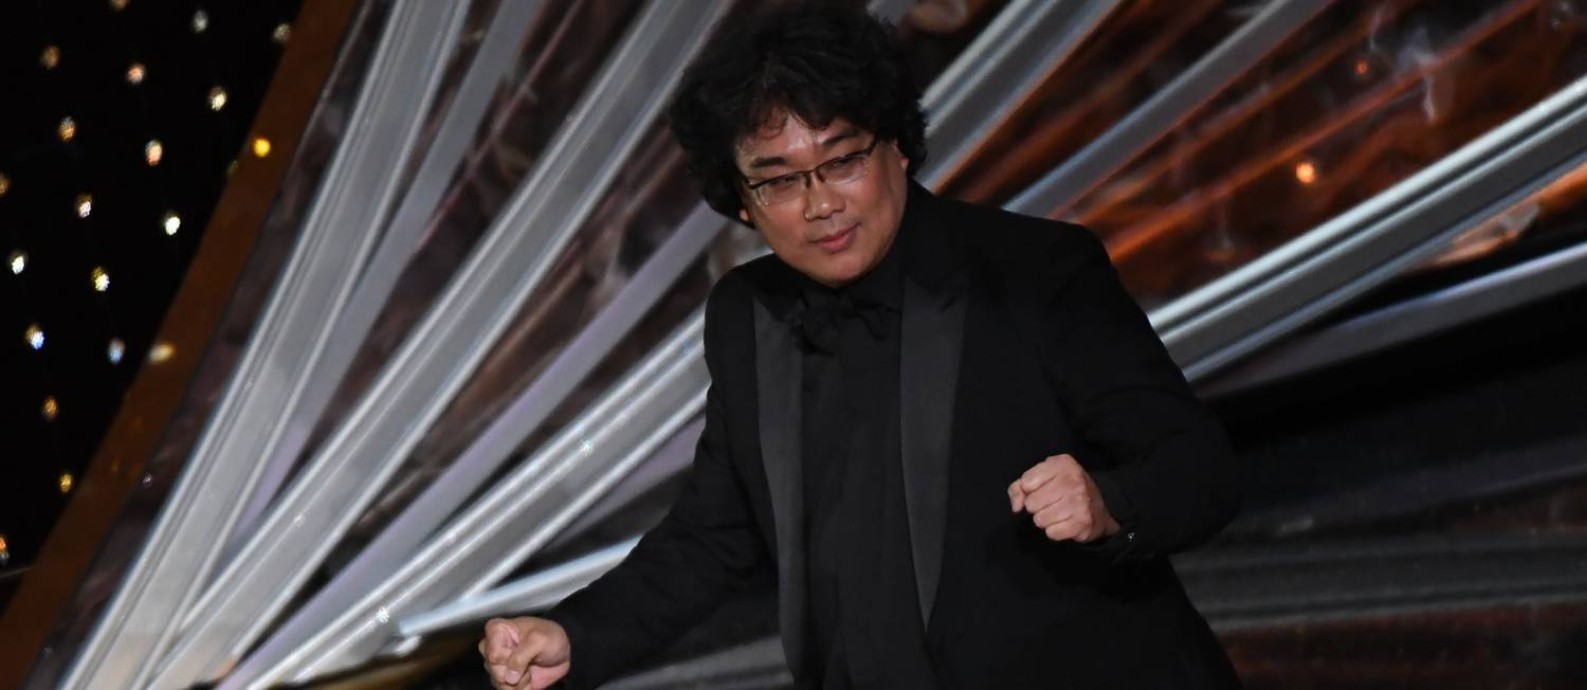 O diretor Bong Joon-ho celebra a vitória de melhor filme de 'Parasita' no Oscar 2020 Foto: MARK RALSTON / AFP